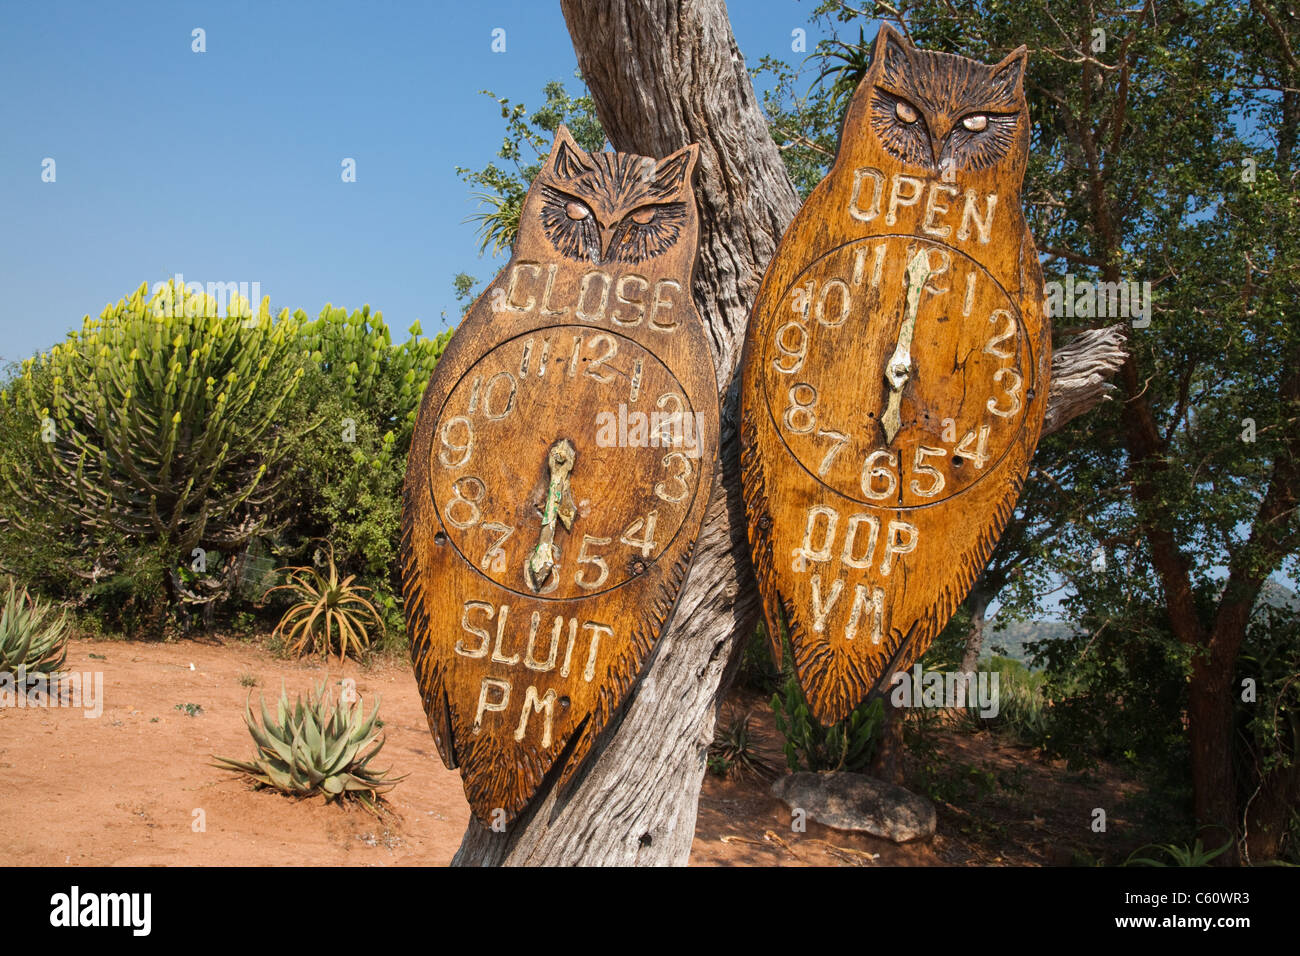 Gate times sign, Berg-en-dal rest camp, Kruger national park, South Africa Stock Photo